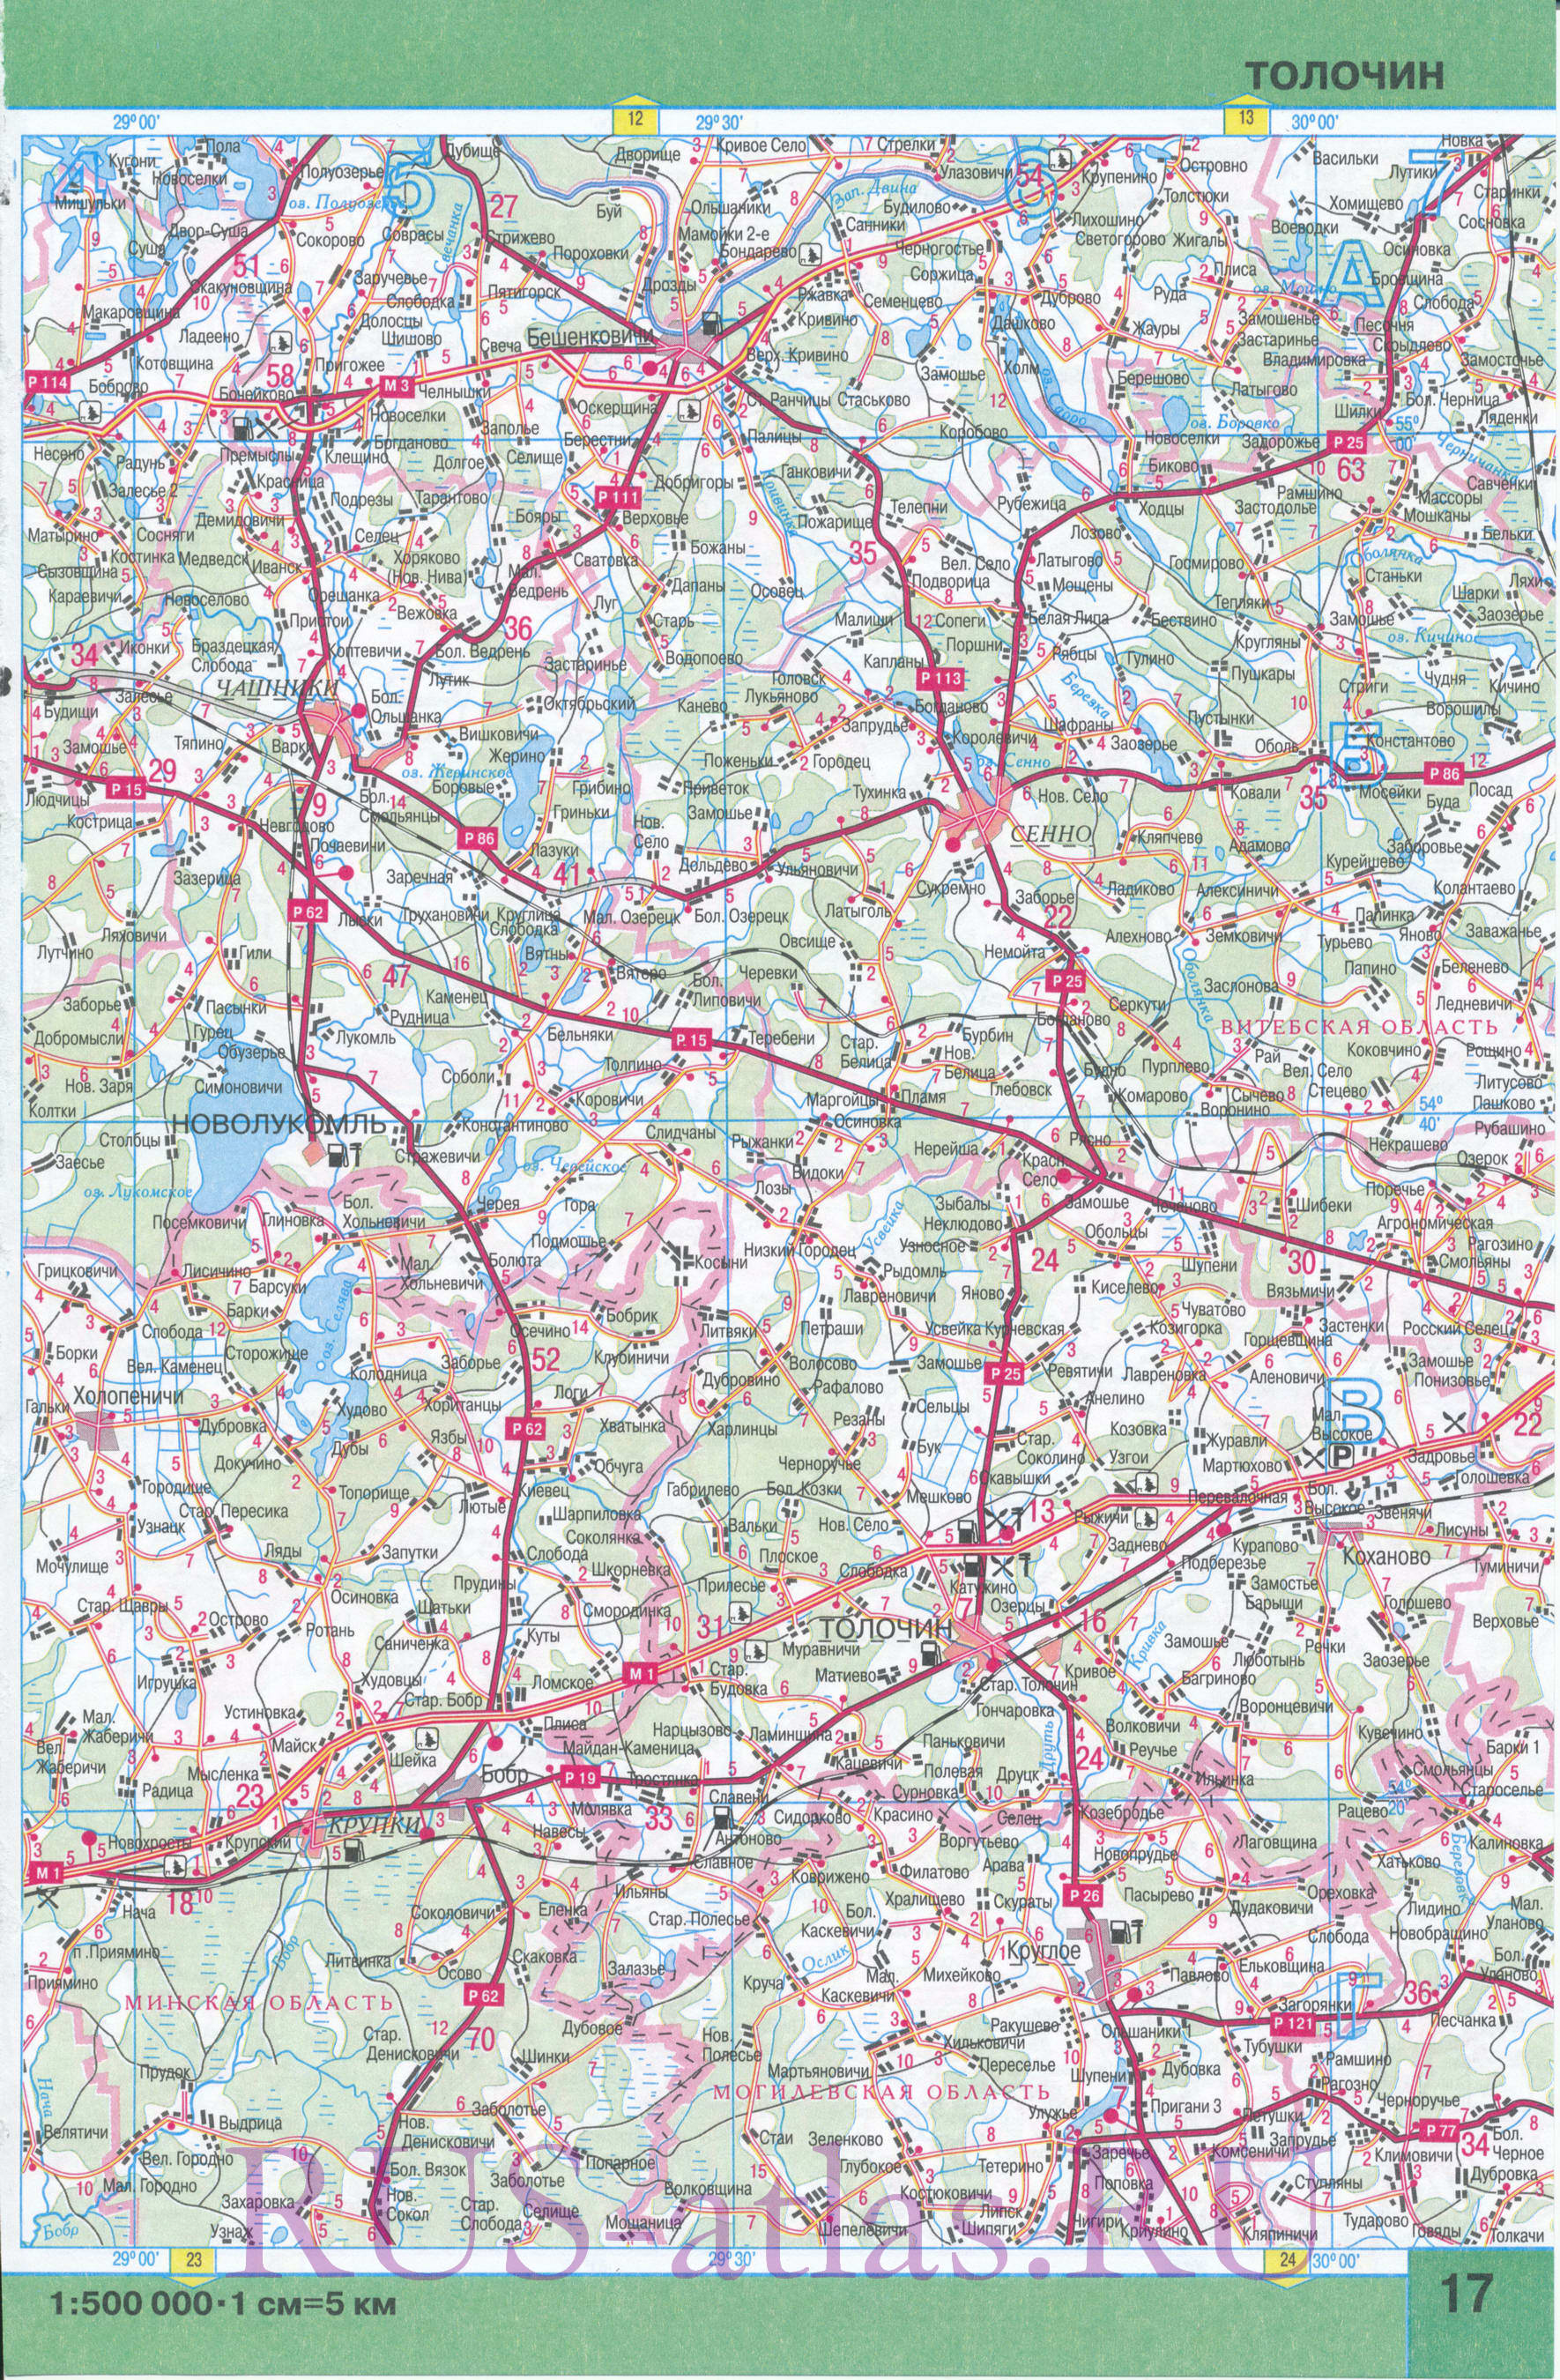 Карта Витебской области. Карта автомобильных дорог Витебской области Беларуси. Площадь Витебской обл 40 тыс кв км, население 1 265 300 человек, B1 - 